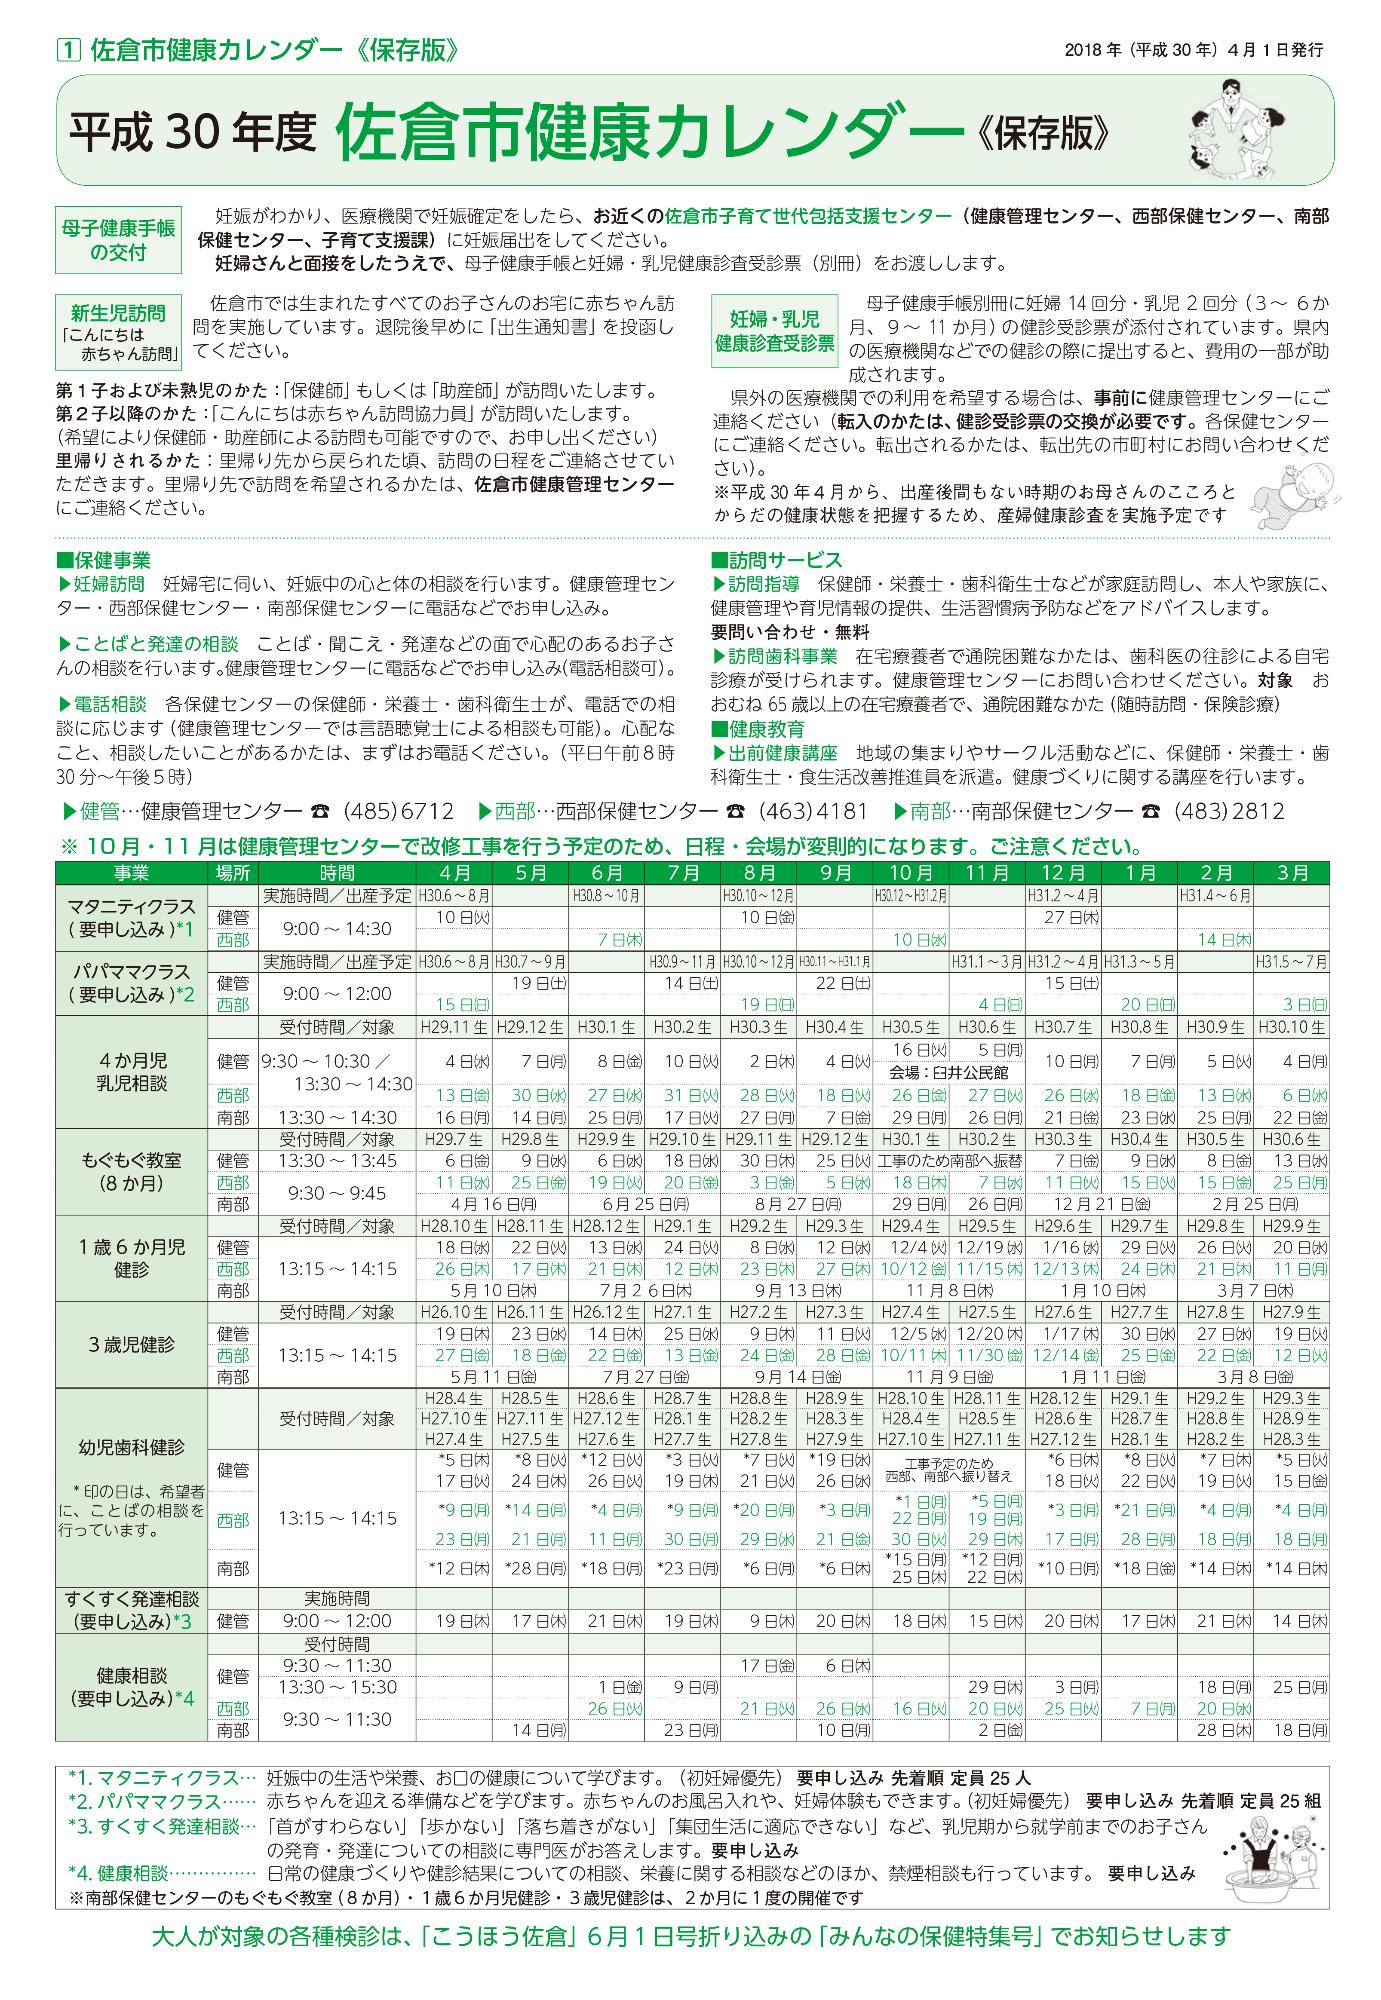 佐倉市健康カレンダー